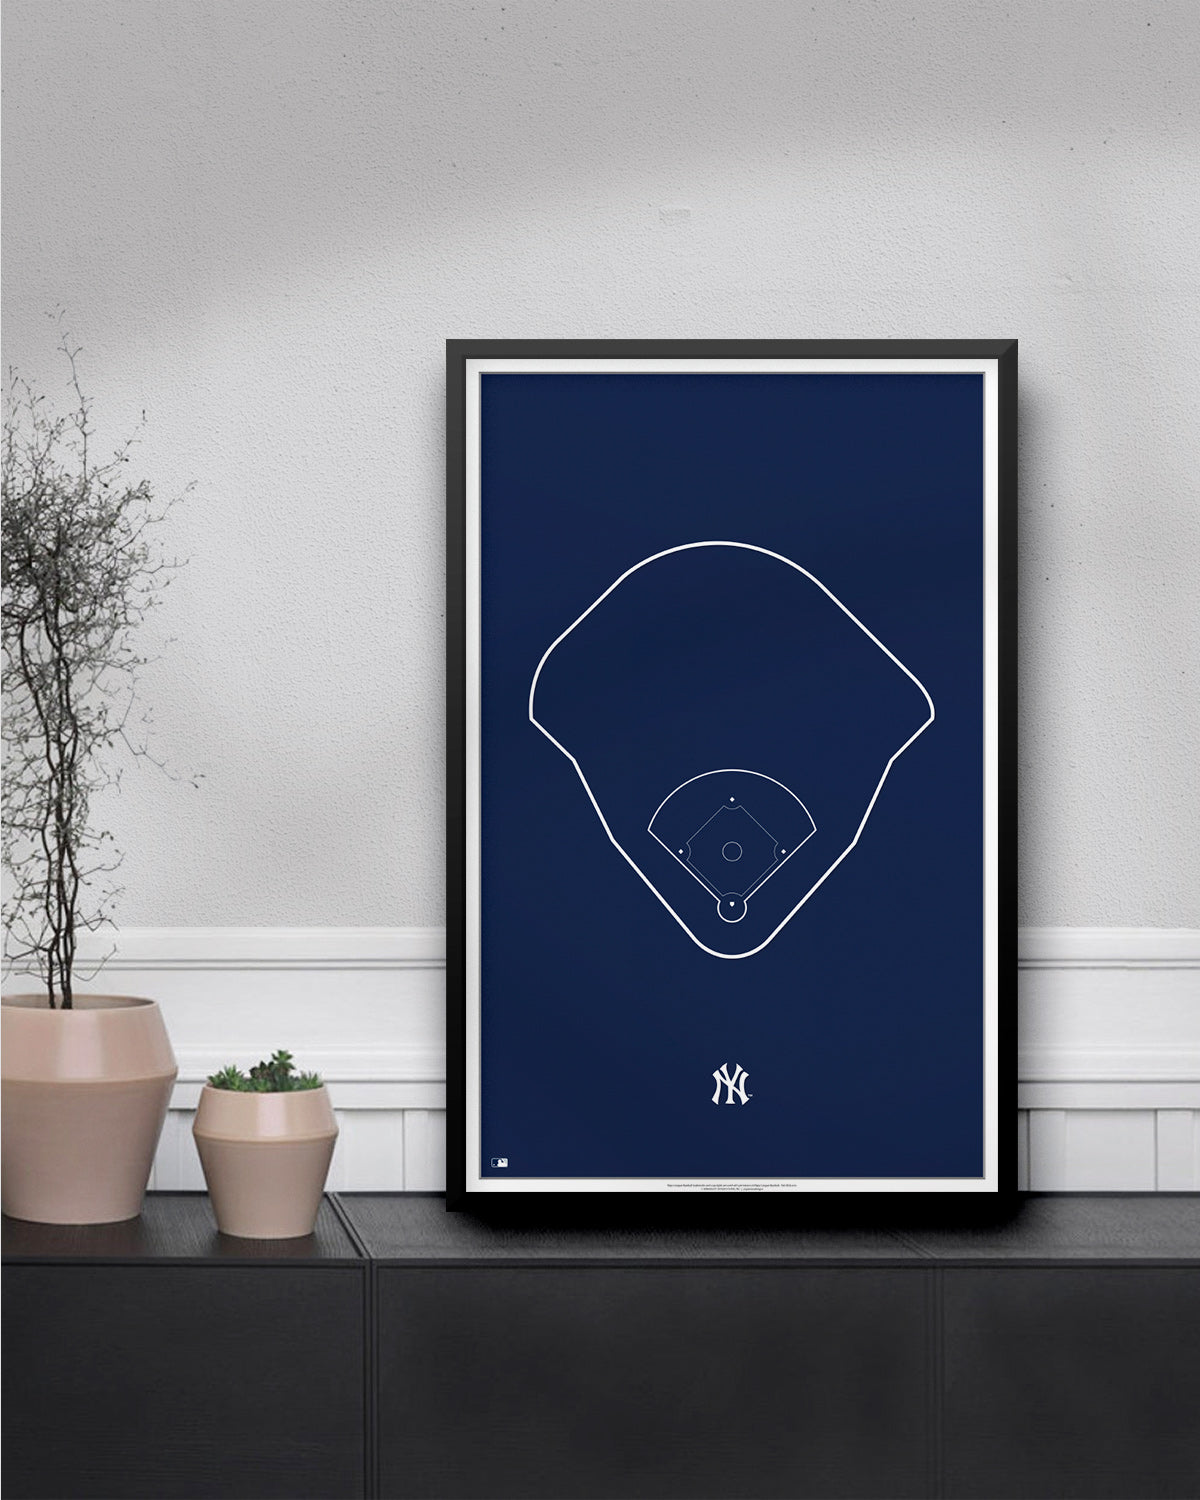 Minimalist Fenway Park Boston Red Sox - S. Preston – S. Preston Art +  Designs